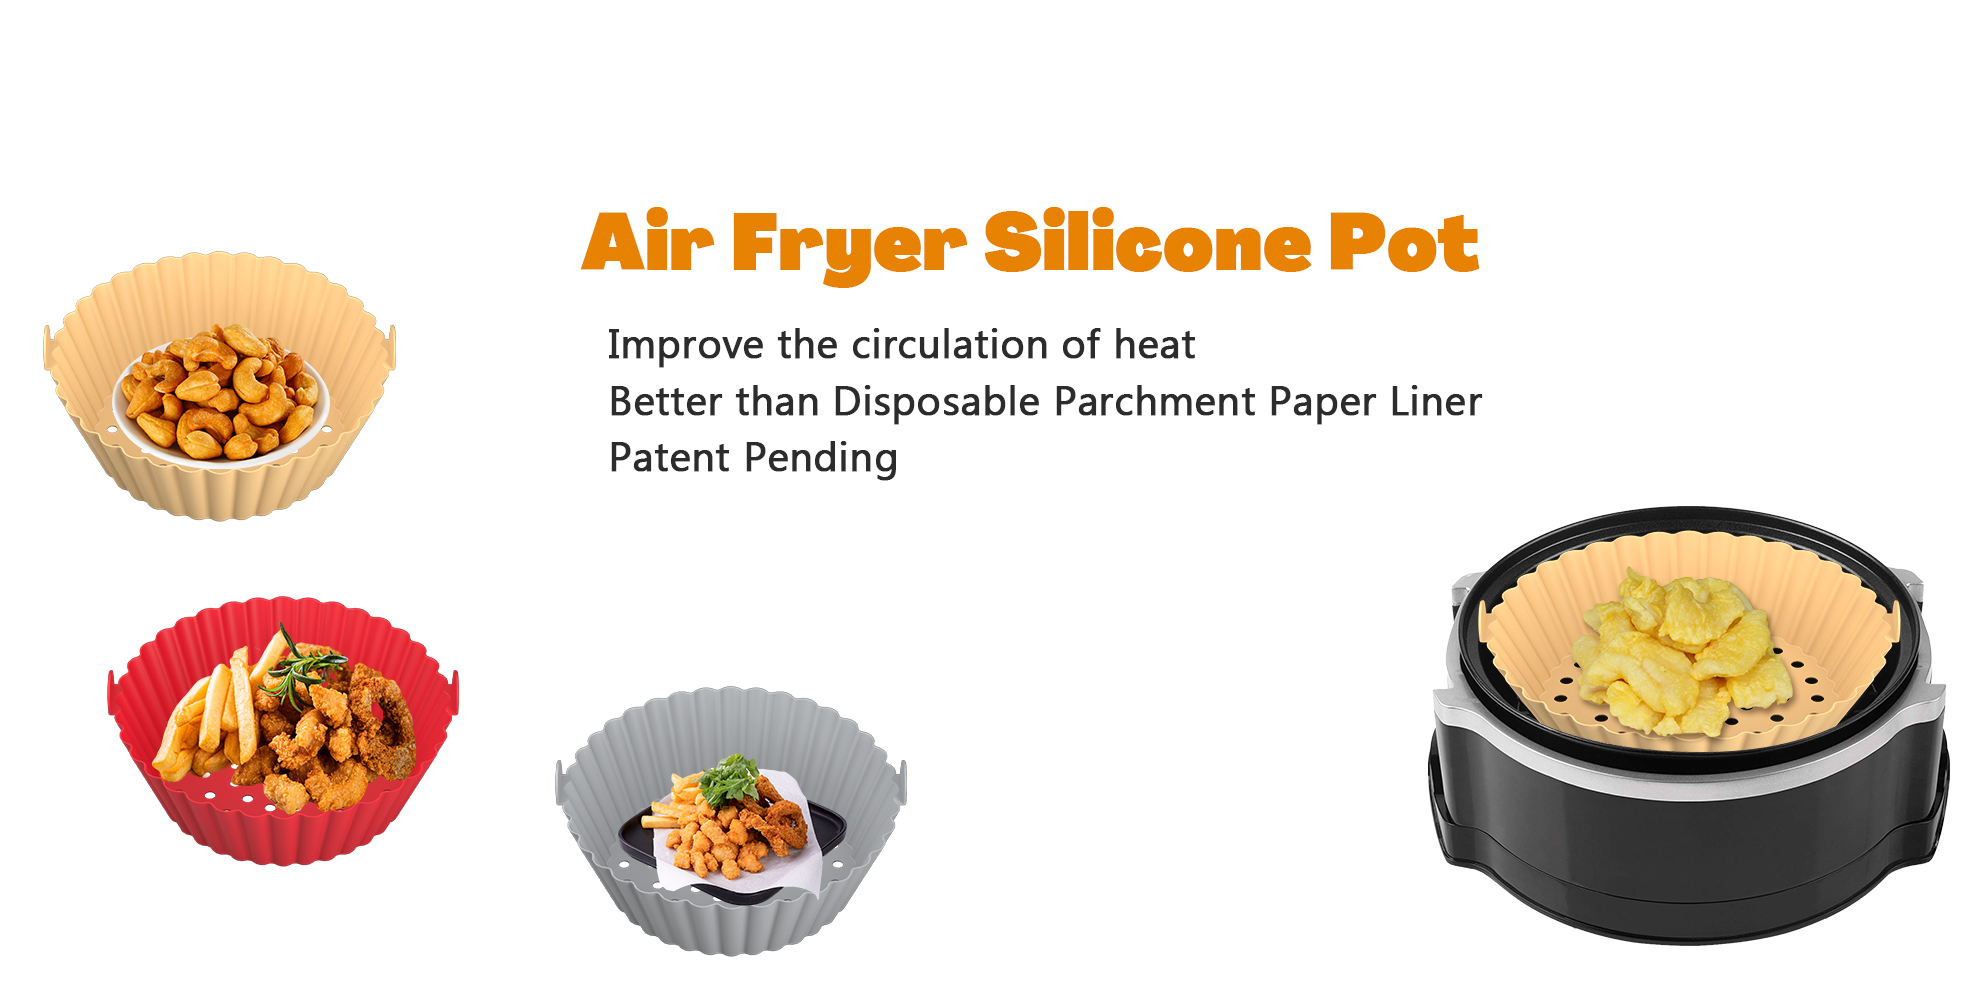 Conception personnalisée de pot en silicone pour friteuse à air de remplacement des doublures en papier parchemin